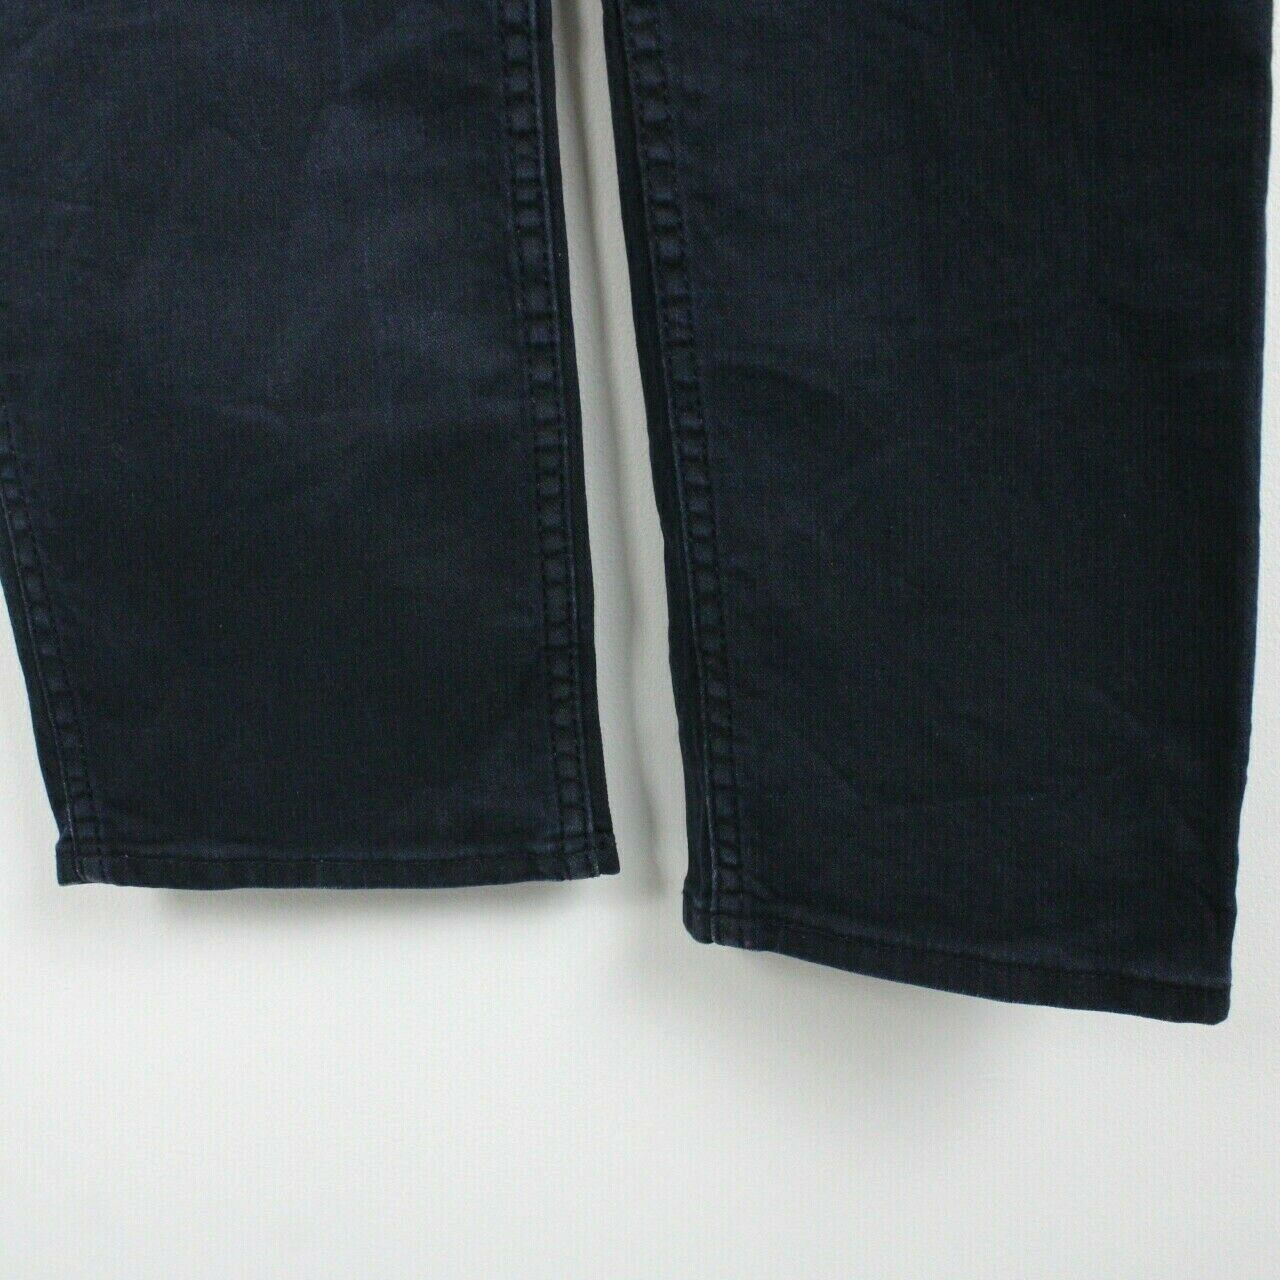 LEVIS 511 Jeans Dark Blue | W35 L34